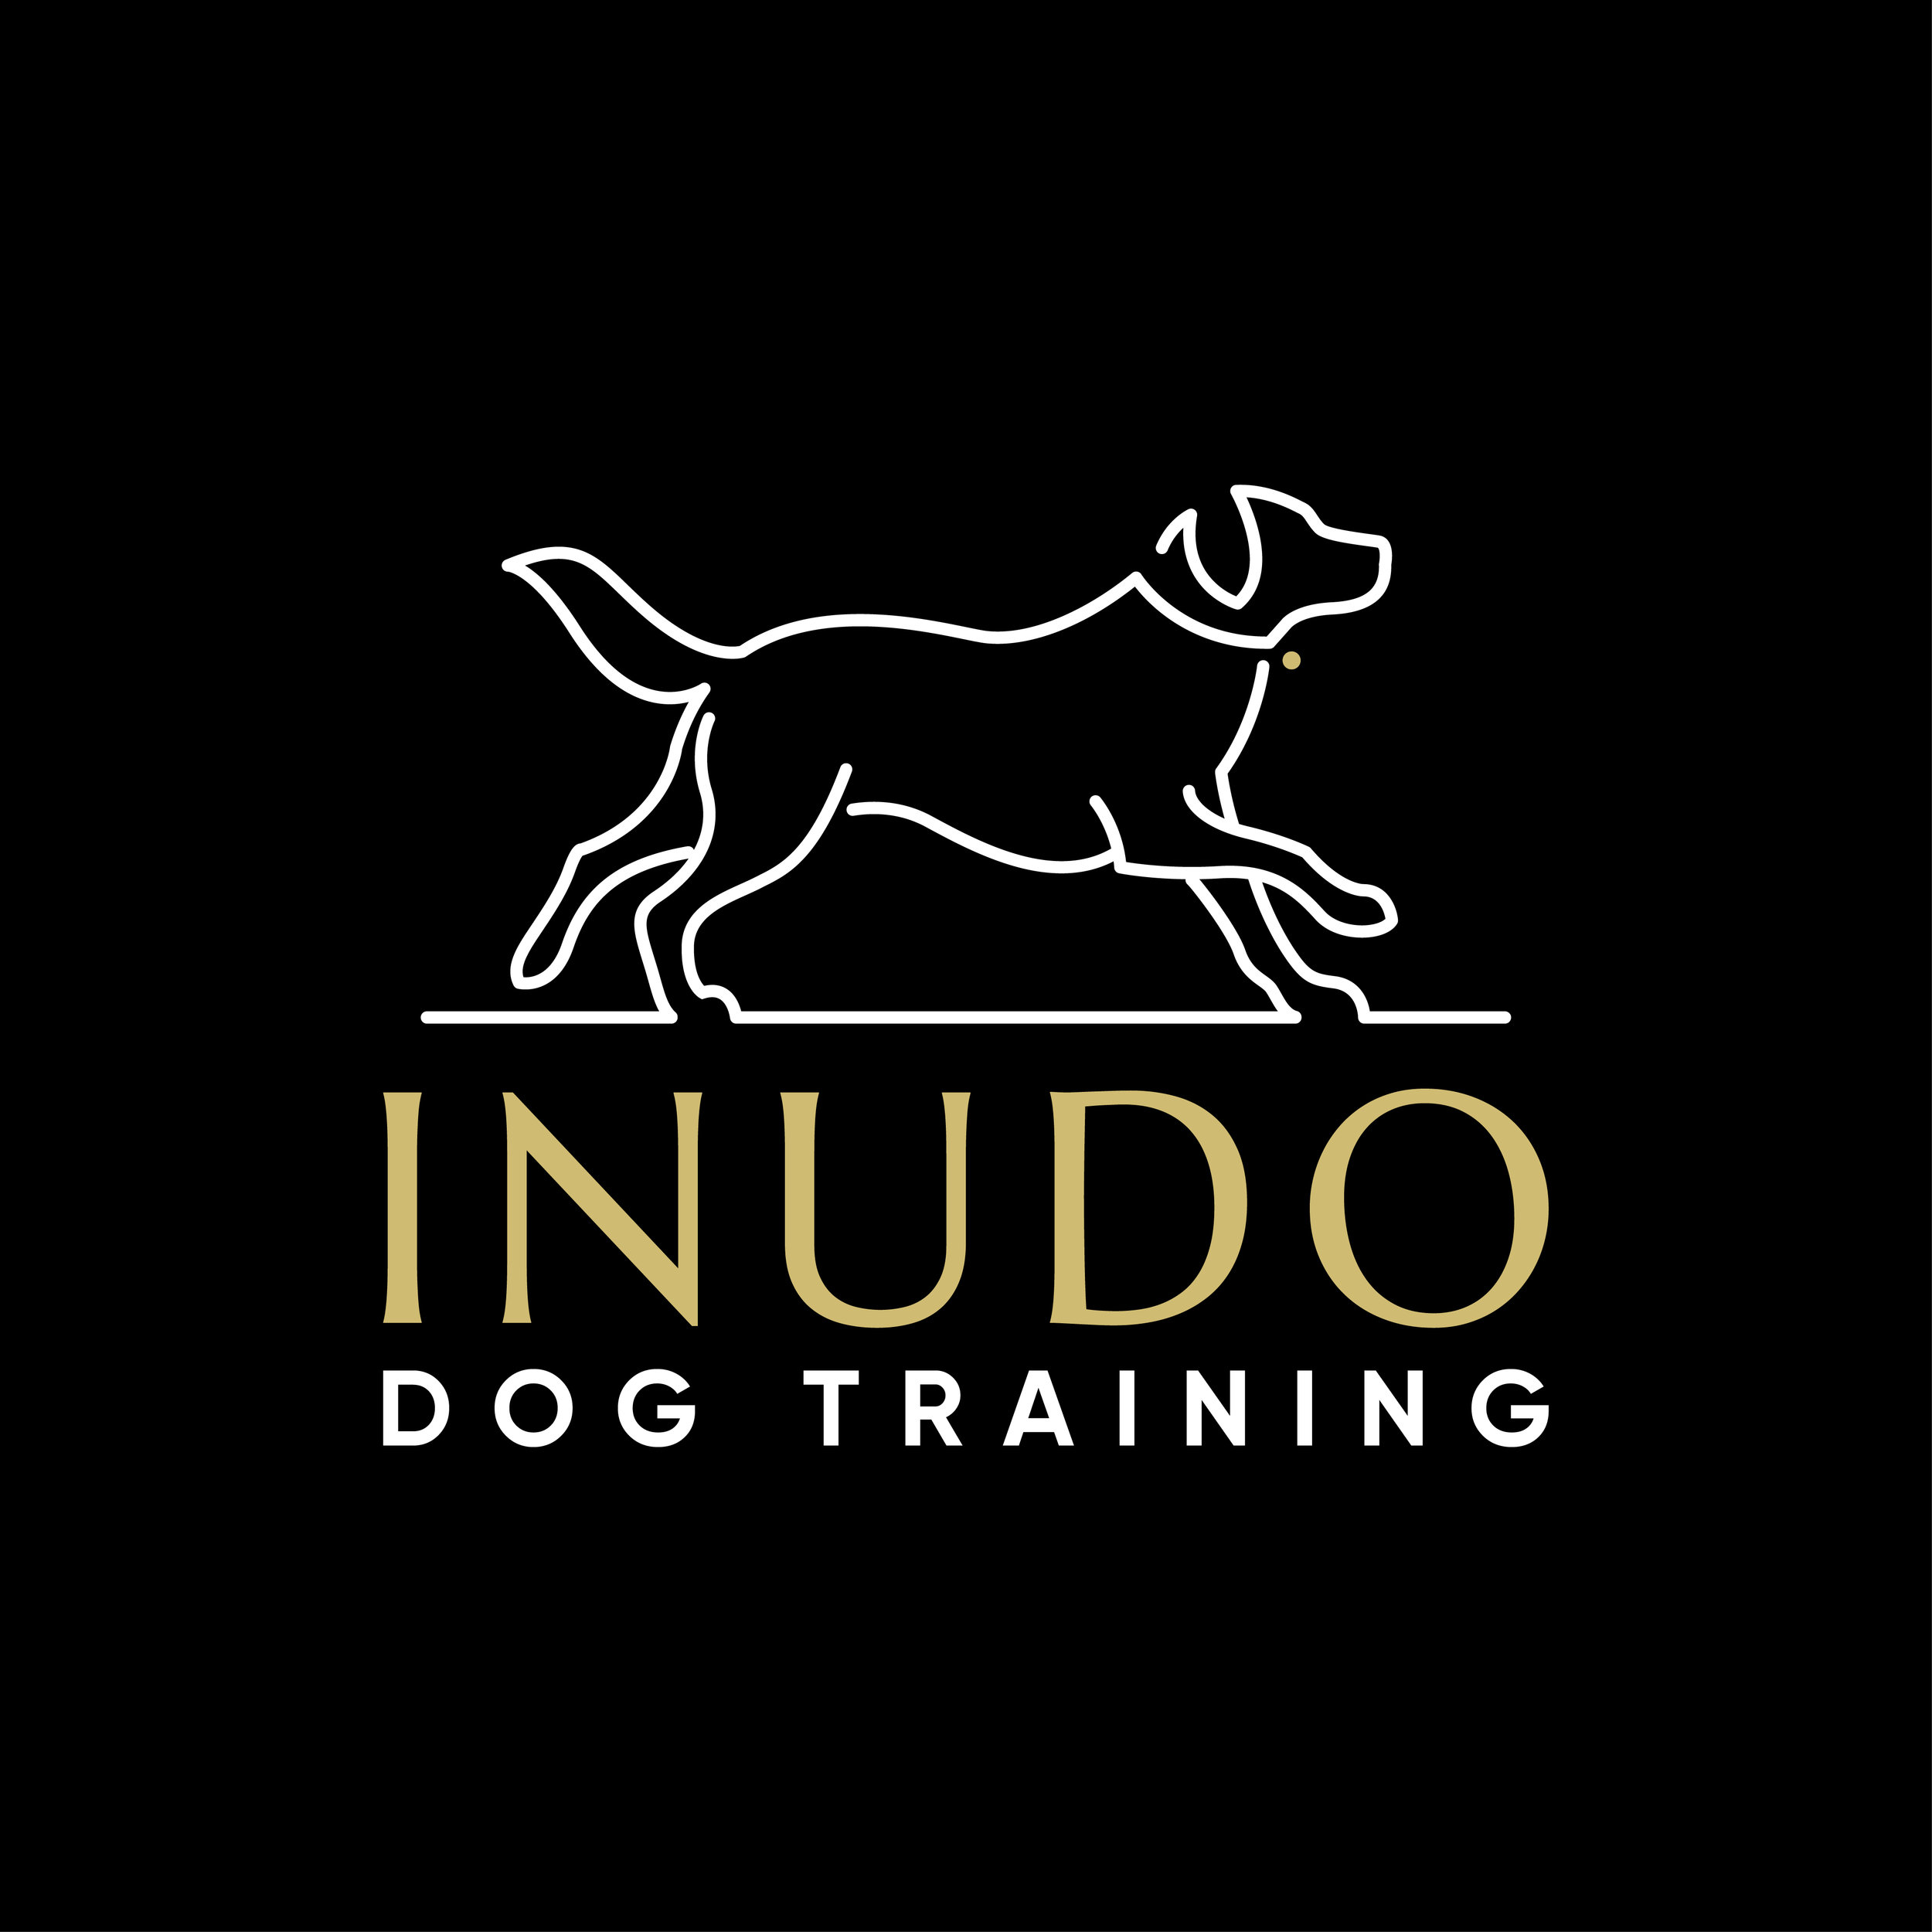 Inudo Dog Training